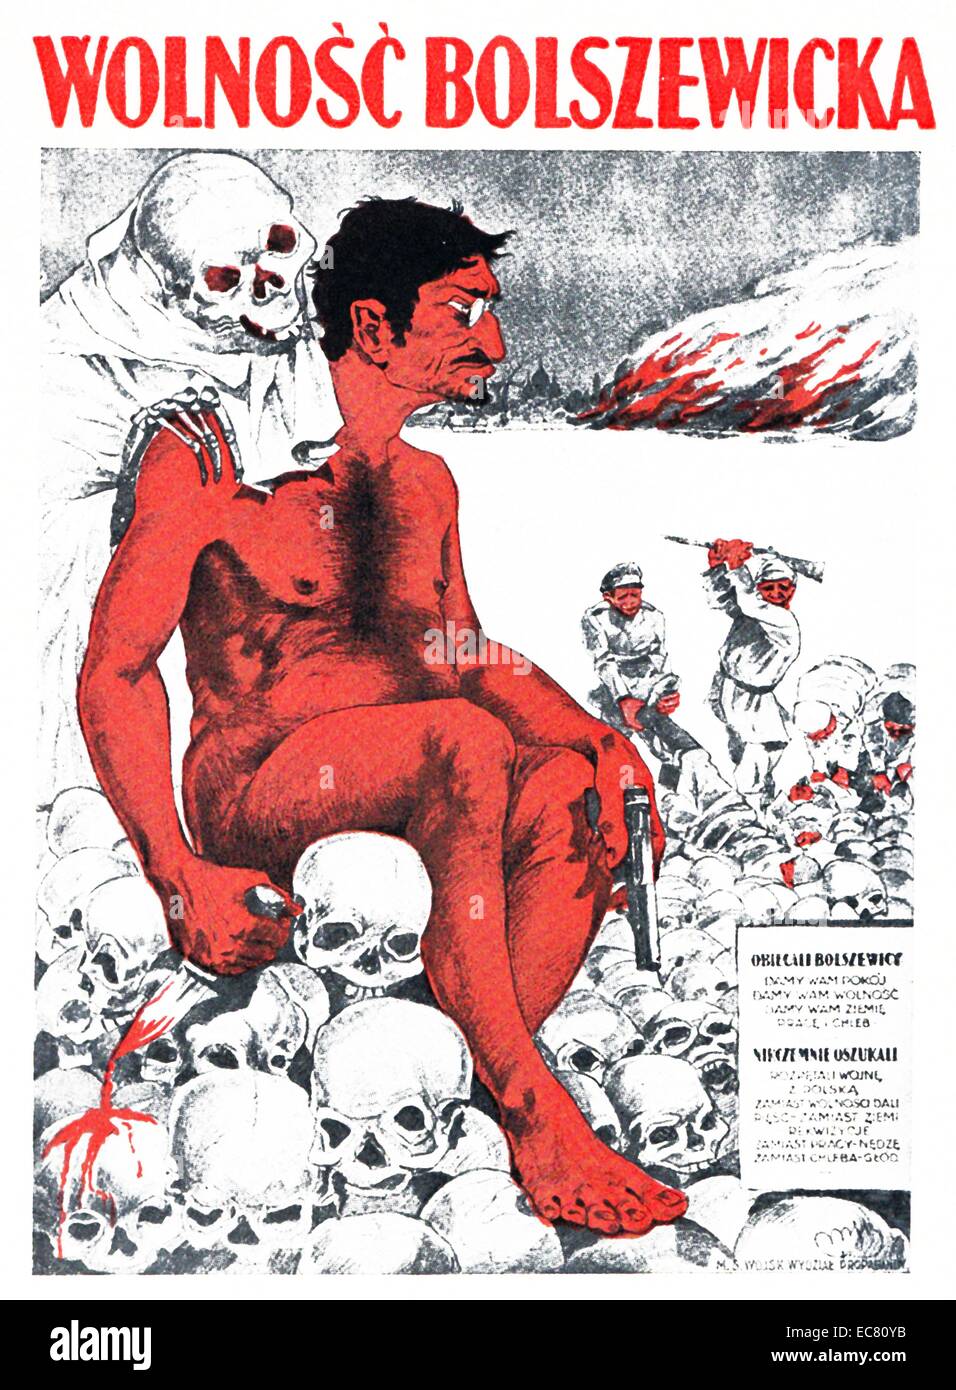 Trotzki über das polnische Plakat von 1920. Trotzki sitzt auf einem Pile Of Skulls, halten ein blutiges Messer während des polnisch-russischen Krieges im Jahre 1920. Als der Krieg begann, Trotzki sofort argumentiert für einen Friedensvertrag, aber nicht durchsetzen, bis Ende 1920. Stockfoto